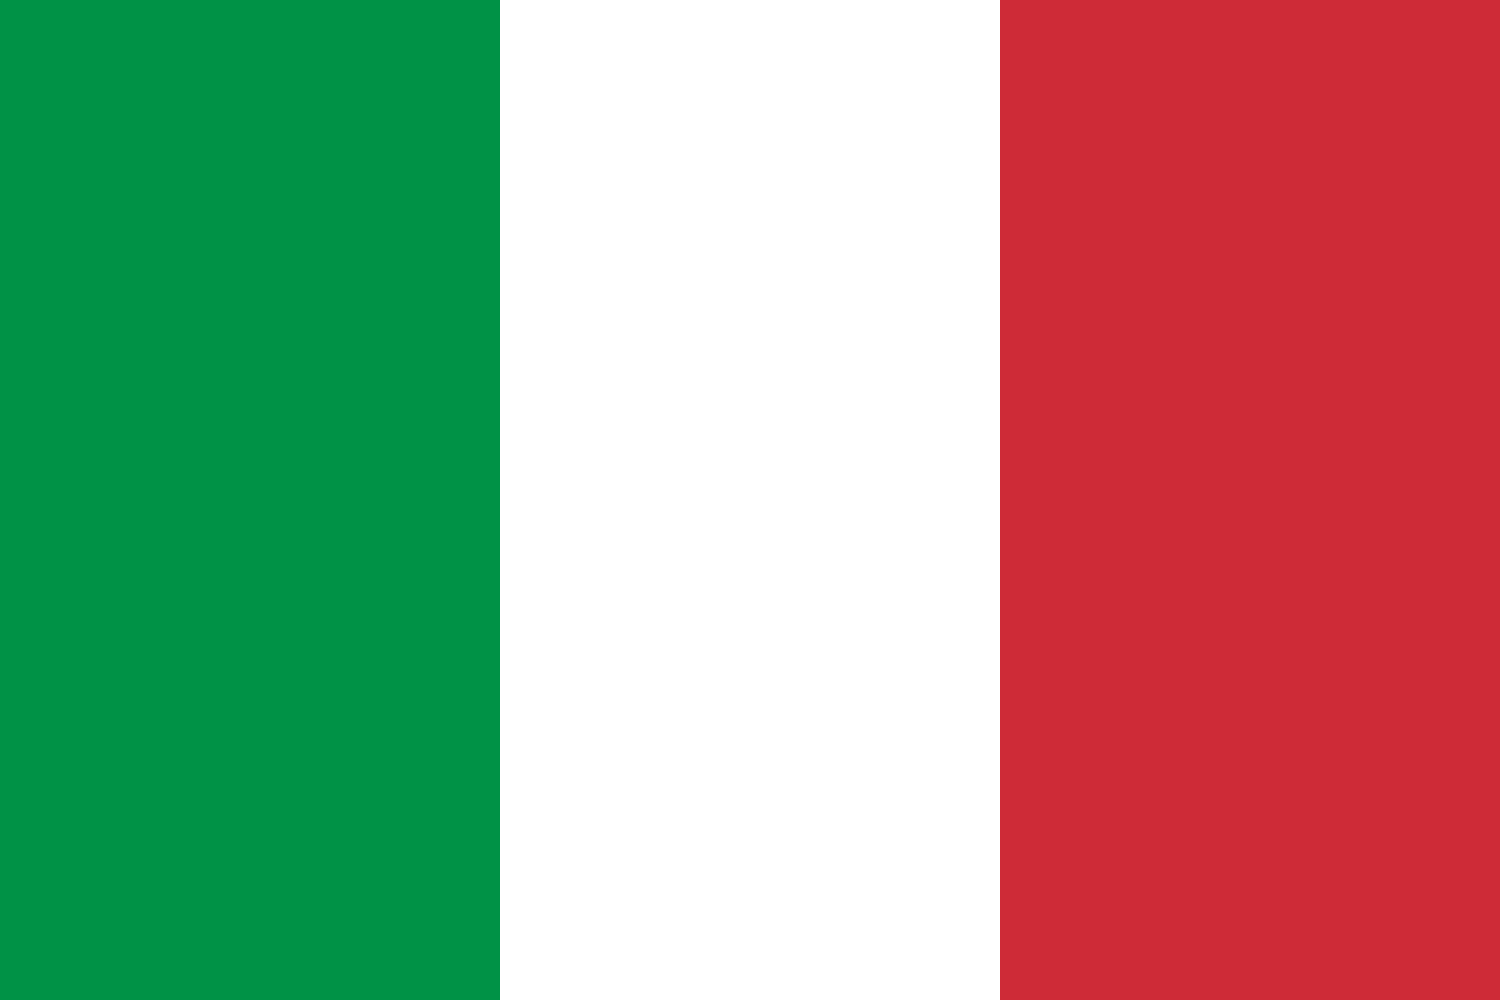 Italia Flagge, um die Sprache auf Italienisch zu ändern